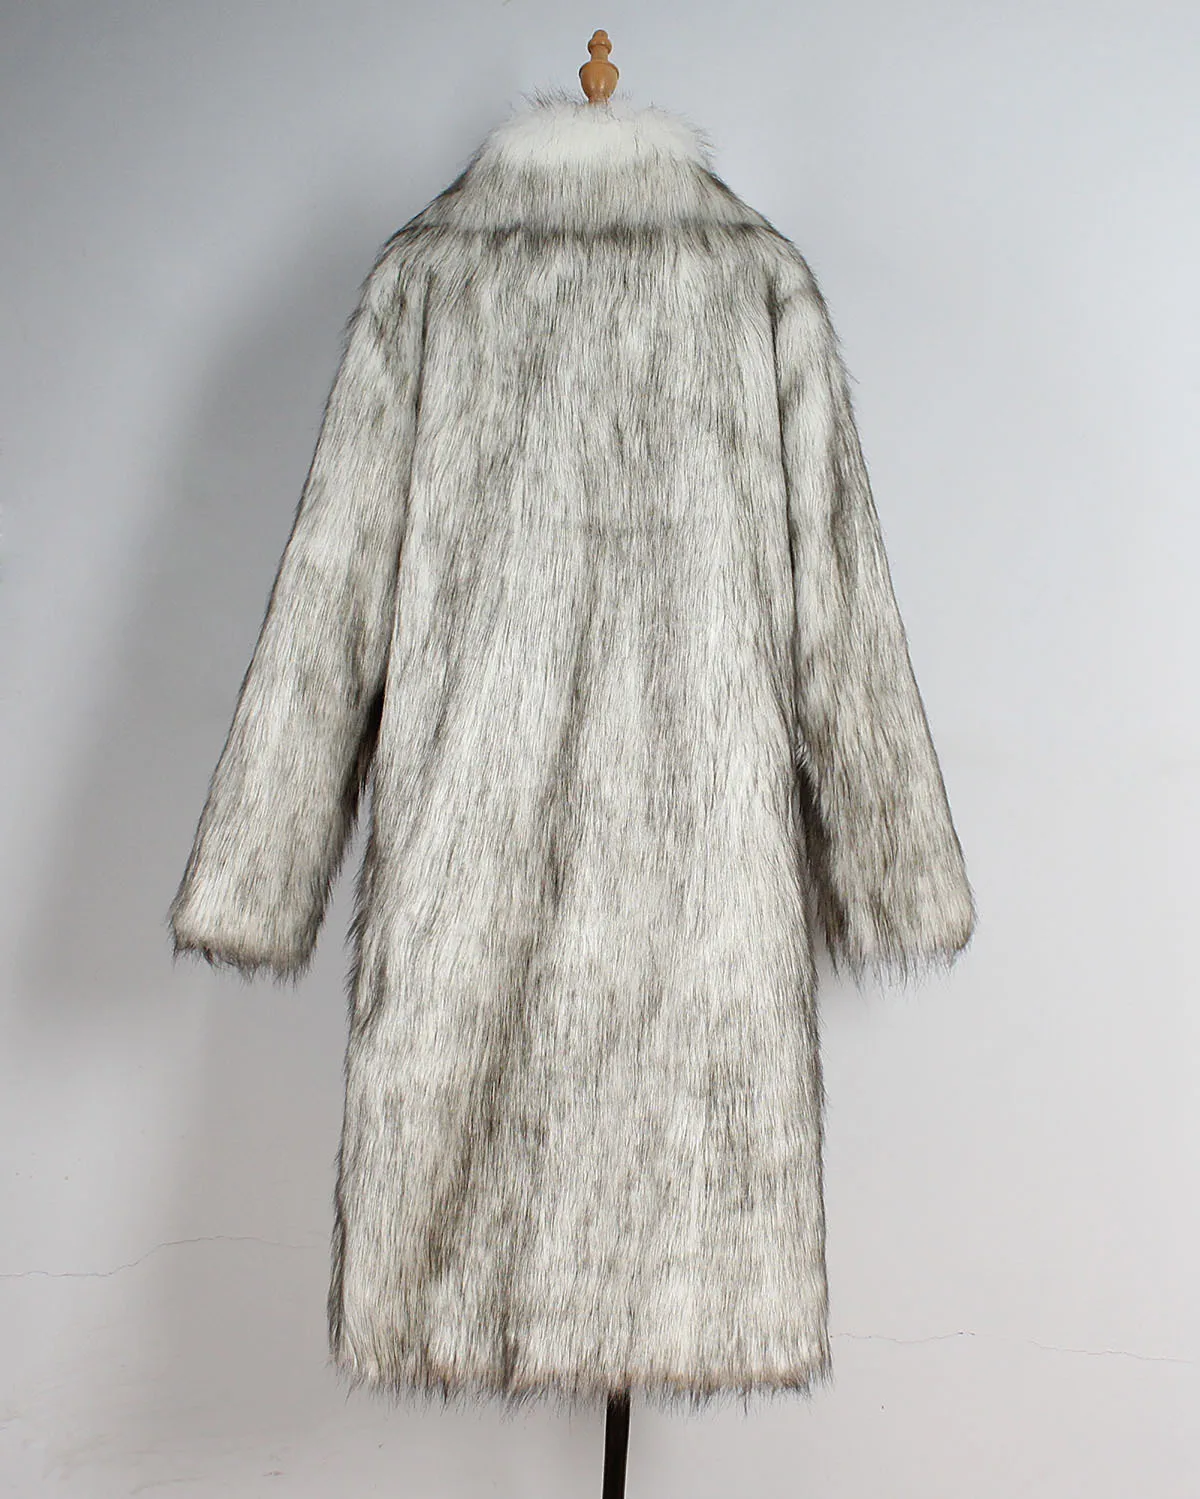 Брендовое роскошное мужское меховое пальто, зимняя верхняя одежда из искусственного меха, теплое пальто, мужские куртки, длинные пальто, мужское меховое утепленное пальто